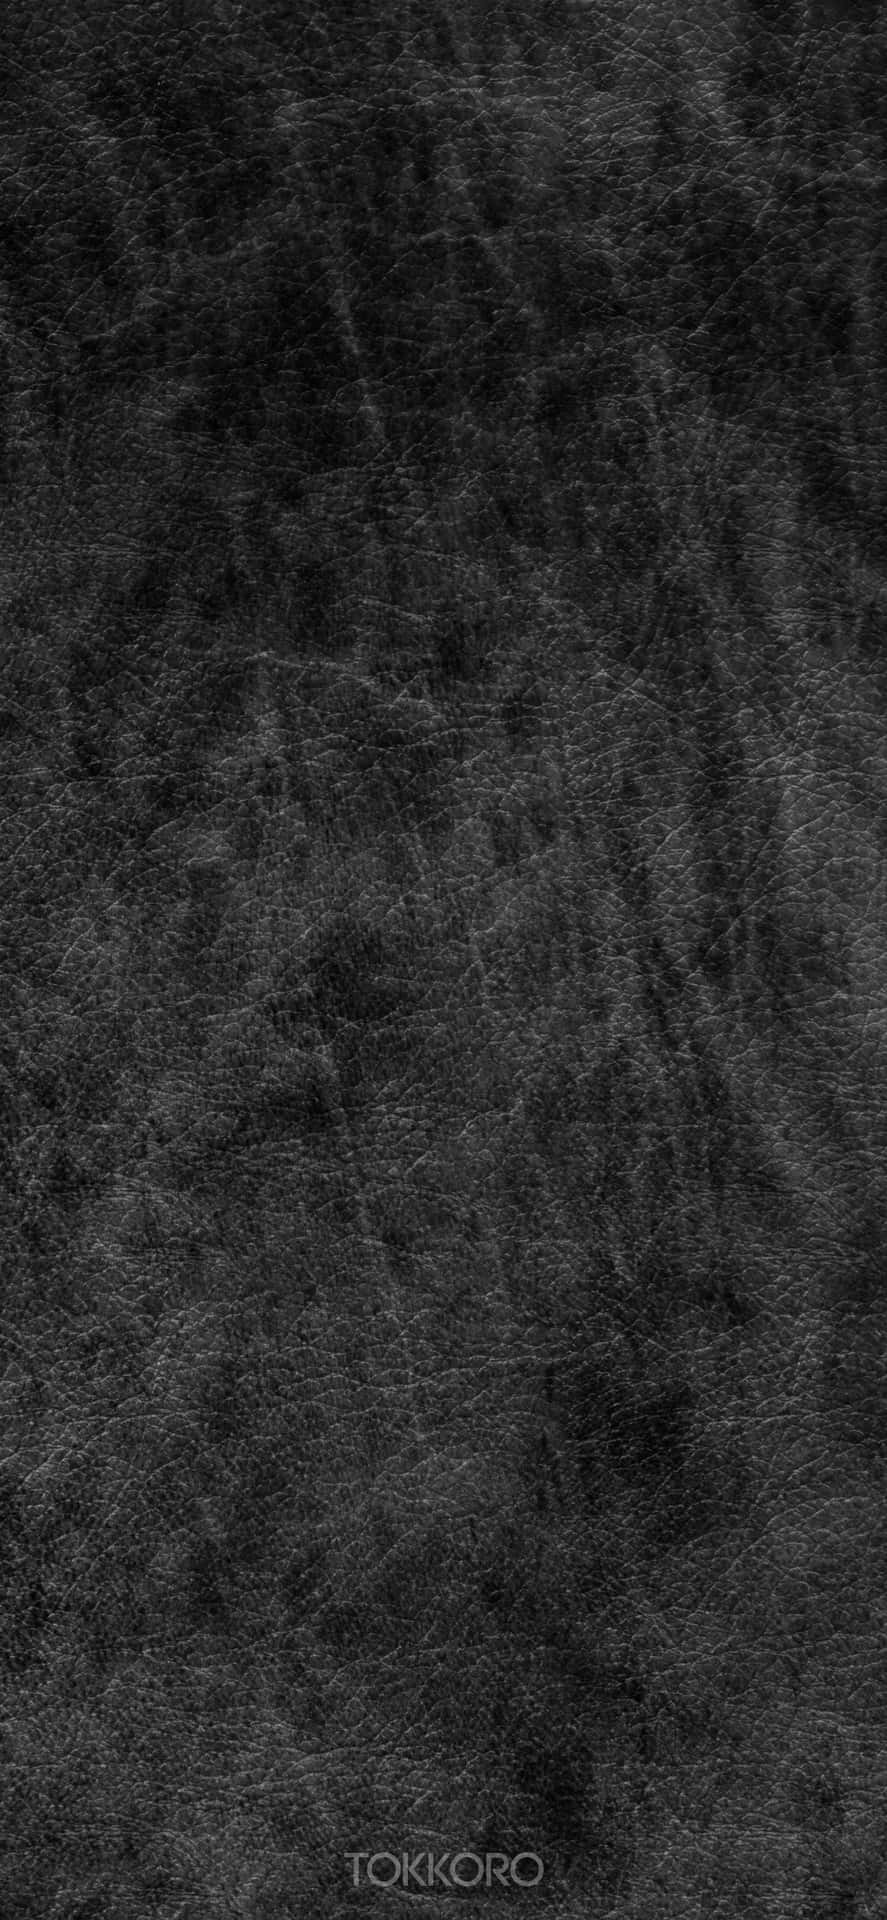 Schwarzeslederstruktur-hintergrund Wallpaper